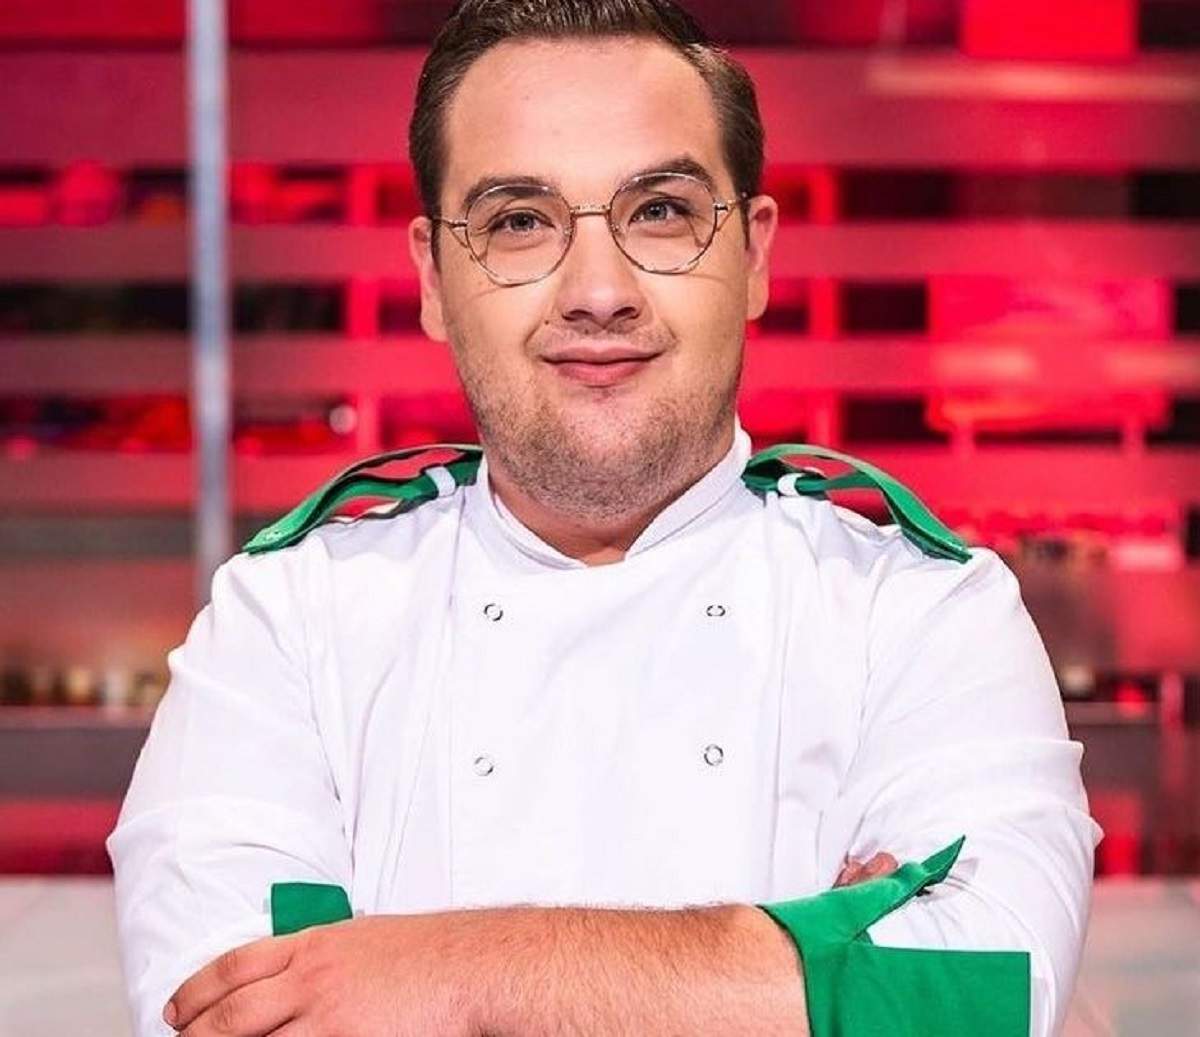 Răzvan Babană este la Chefi la cuțite. Fostul concurent ține mâinile în sân și poartă uniformă de bucătar albă, cu mâneci și umeri verzi.